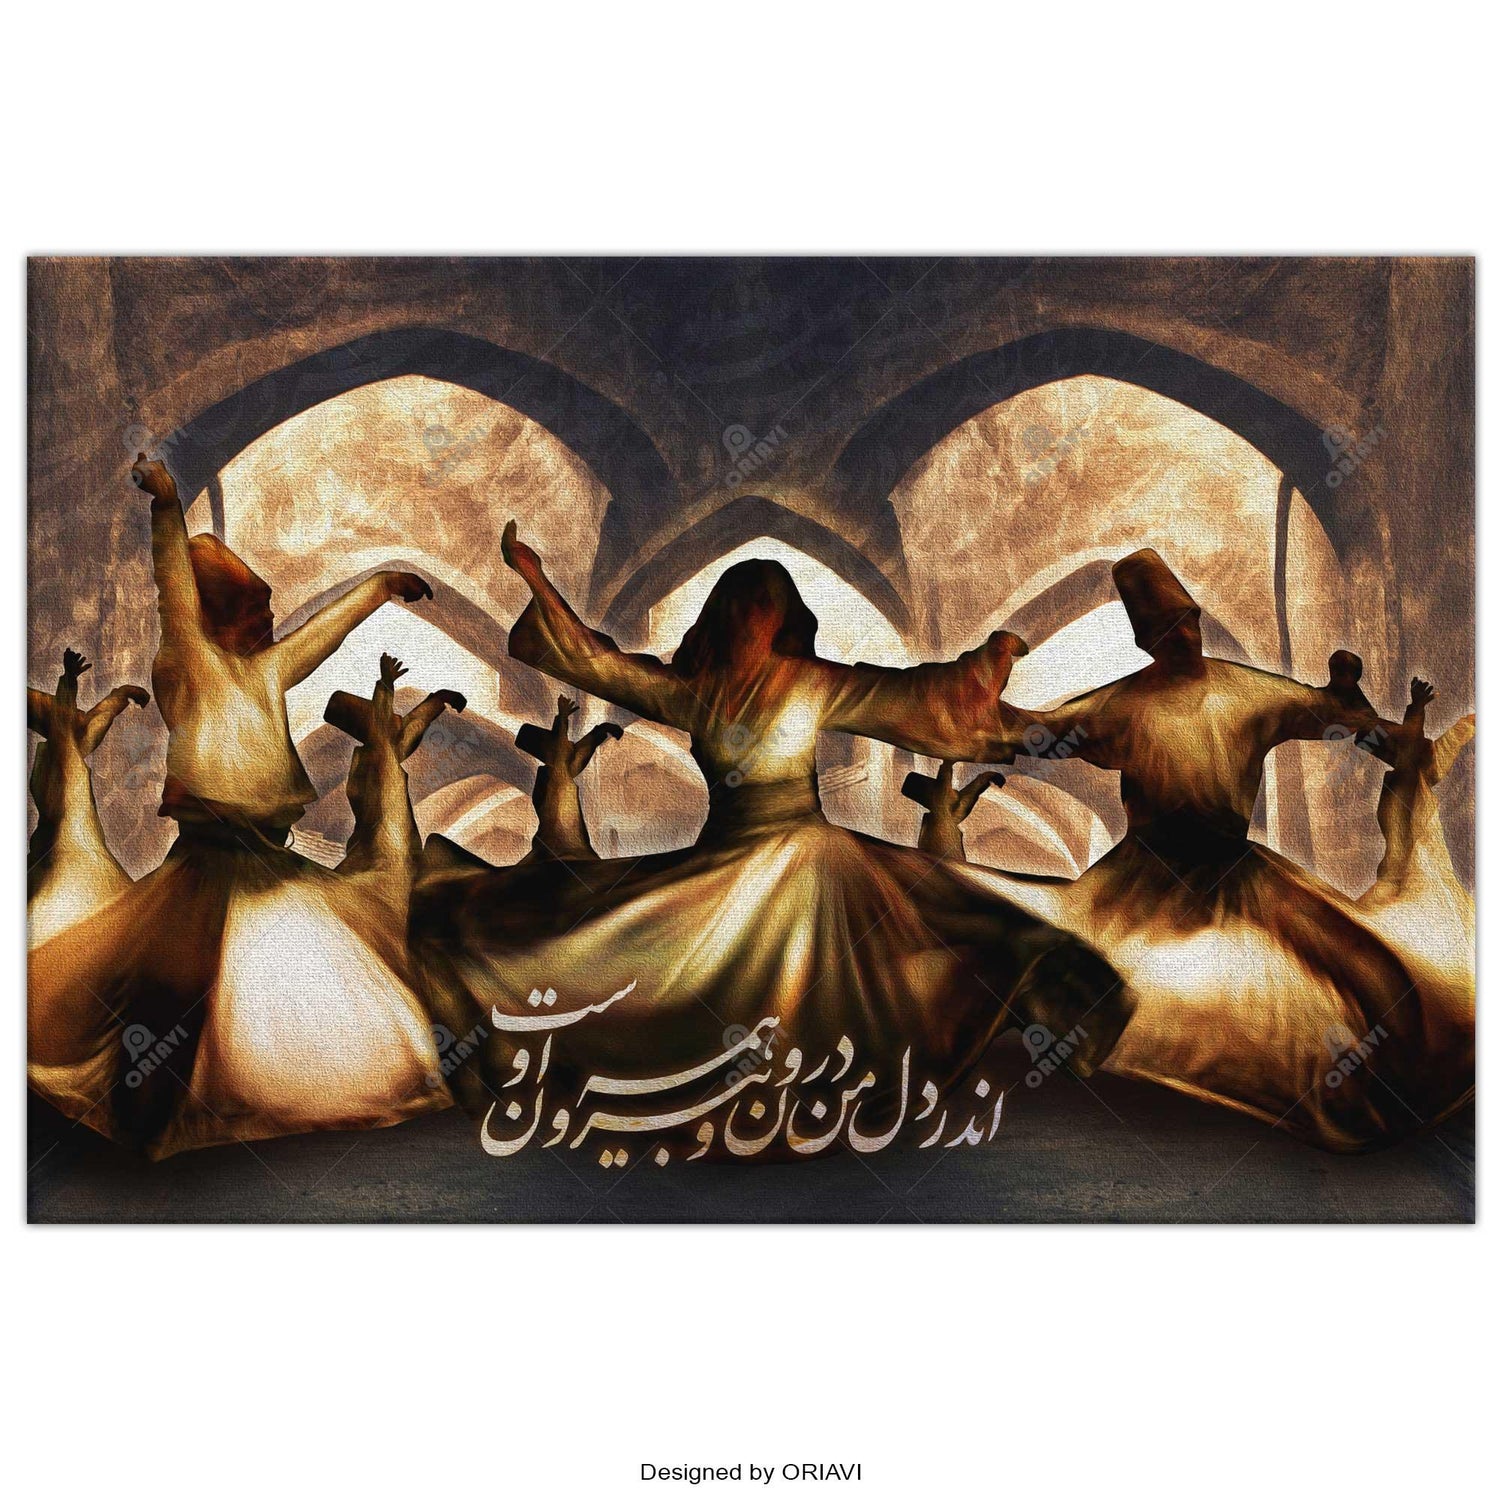 اندر دل من درون و بیرون همه او است persian poster, persian art poster, persian poster for sale, persian poster buy, persian poster art, persian calligraphy poster